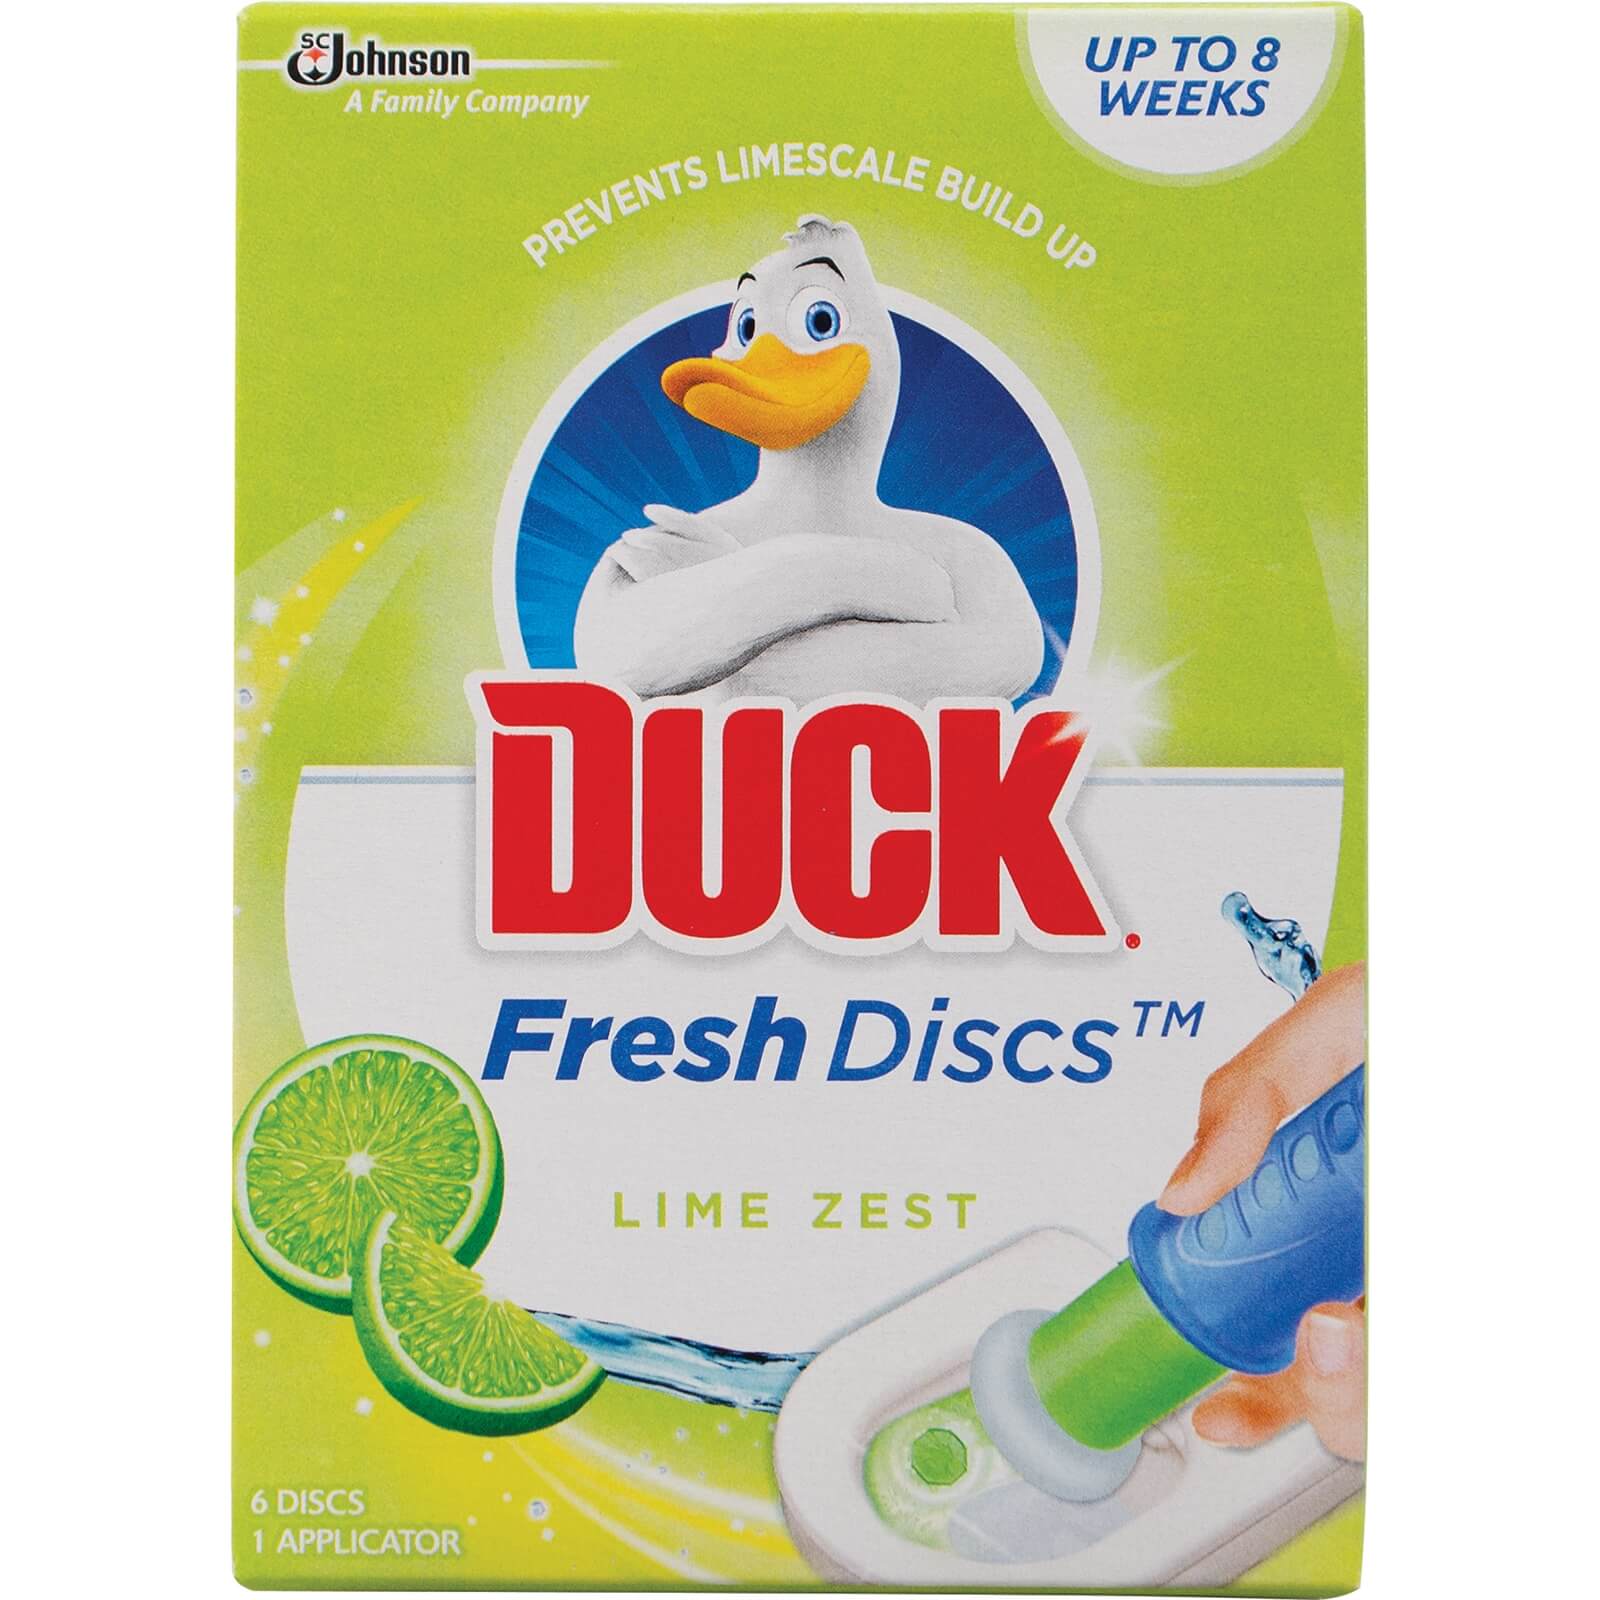 Duck Fresh Discs Lime Zest